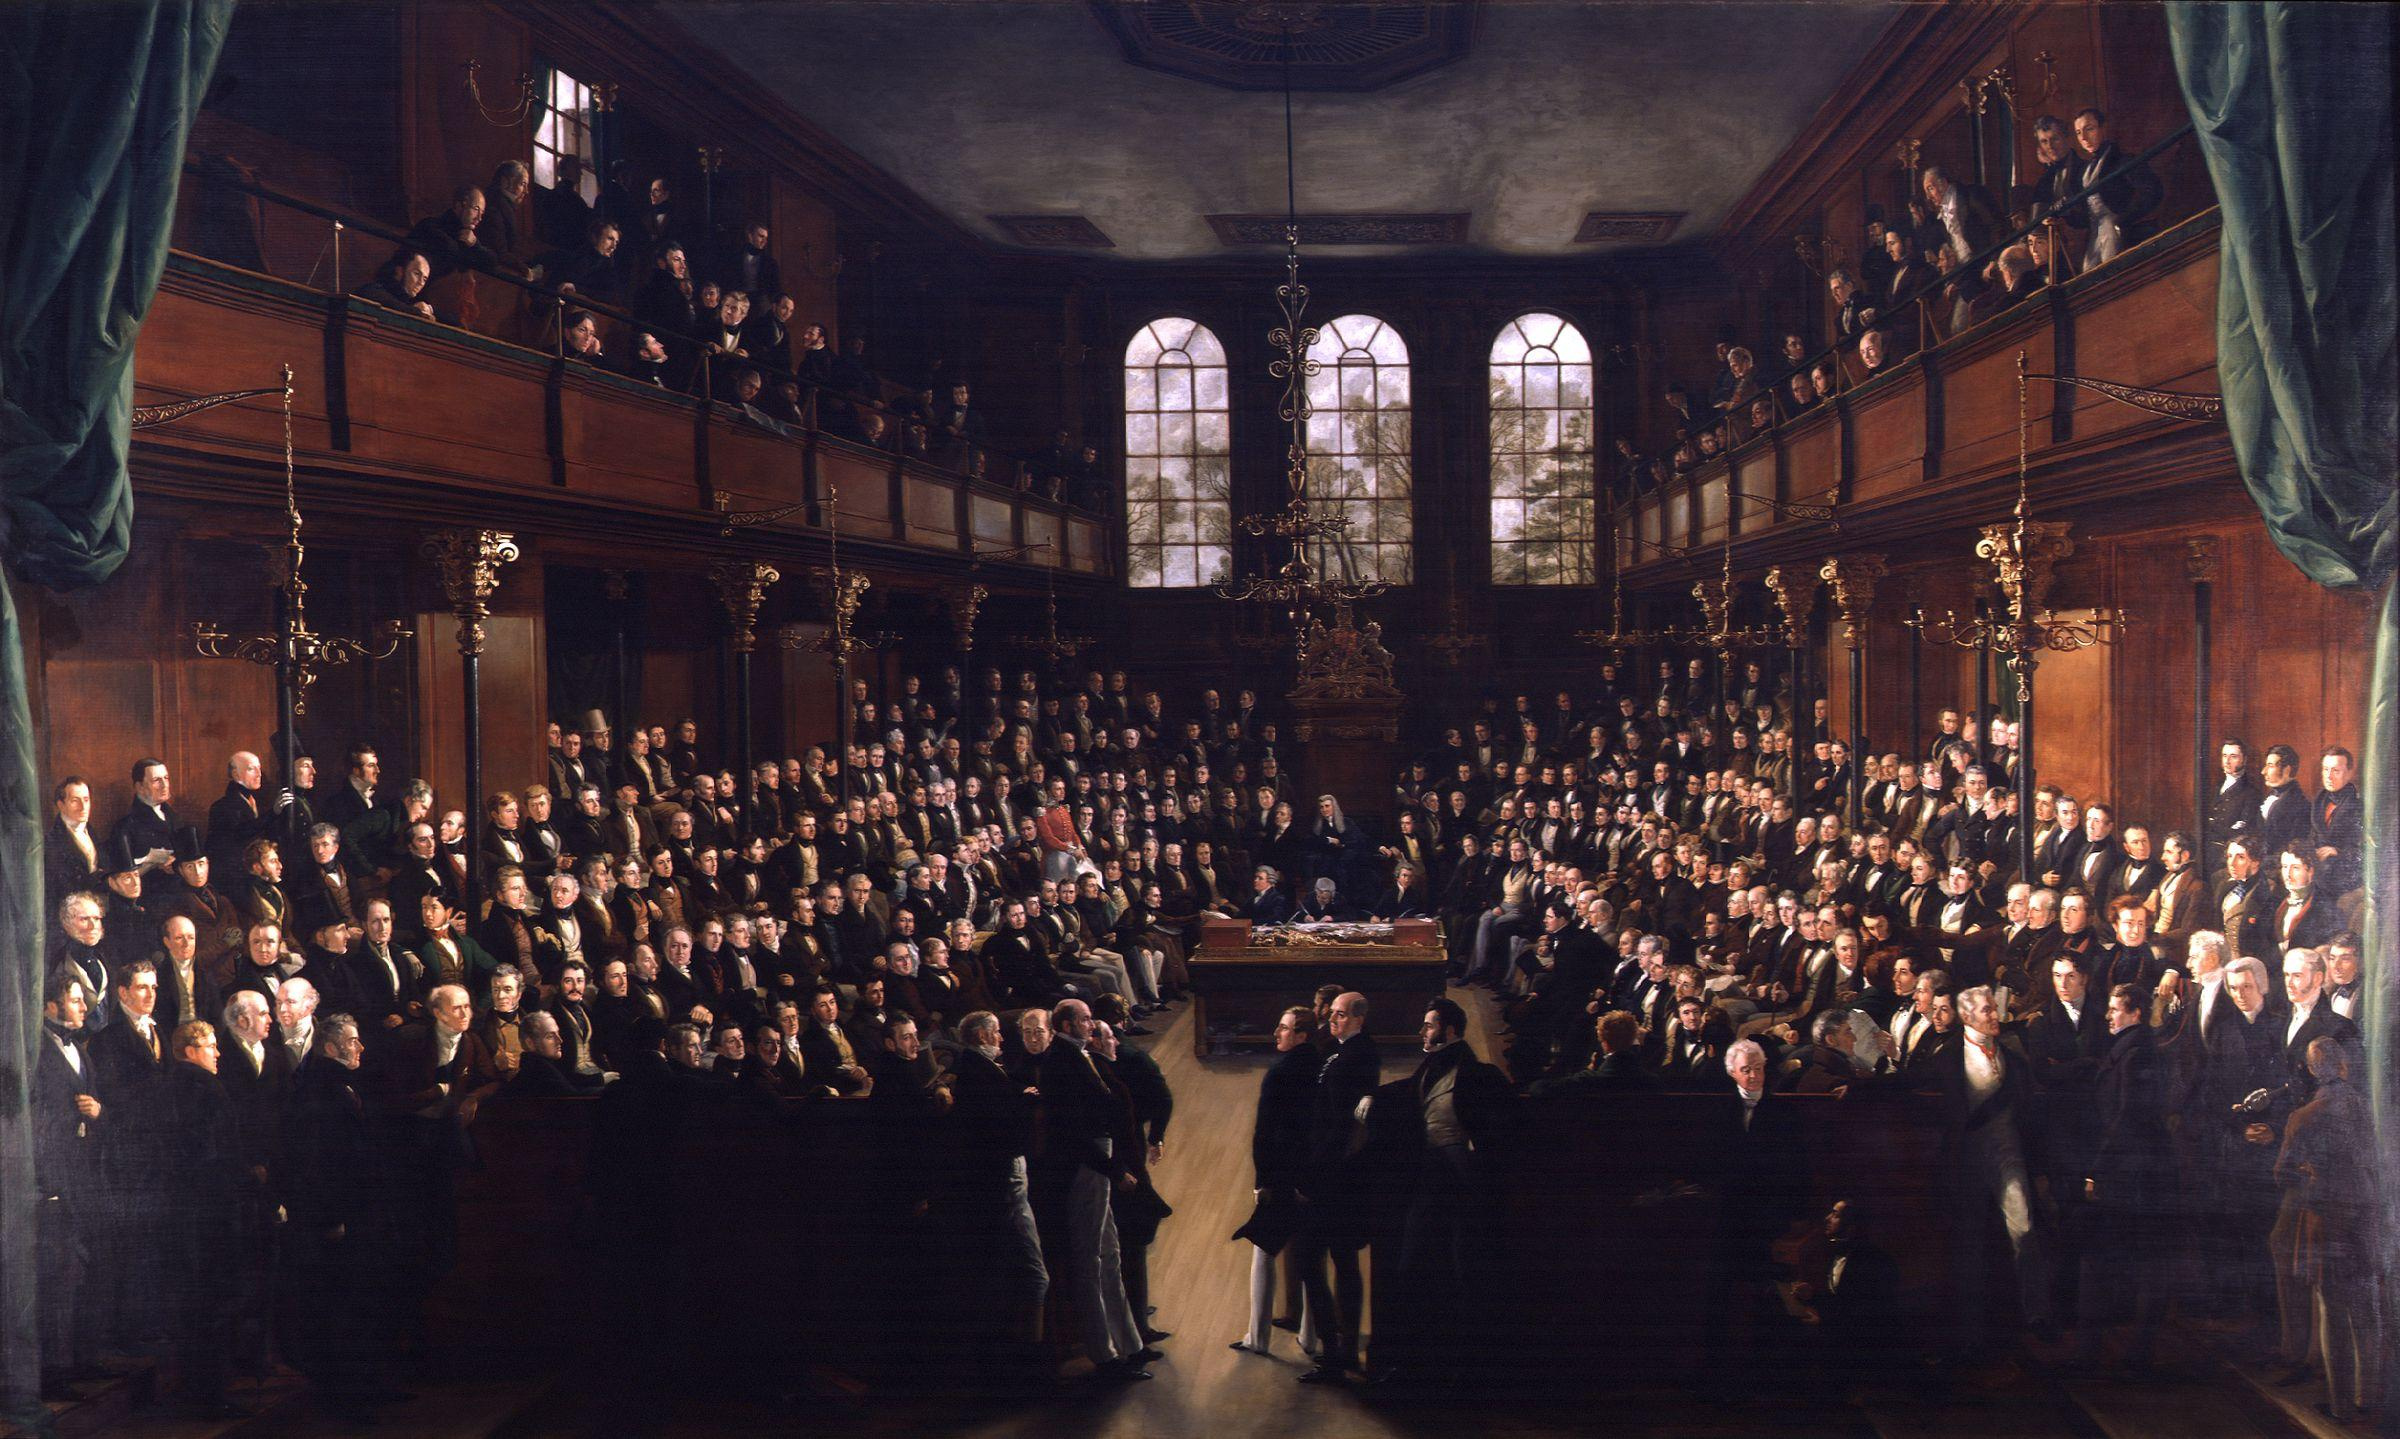 Η Βουλή των Κοινοτήτων σε συνεδρίαση. Έργο του Τζόρτζ Χάιτερ (1833).